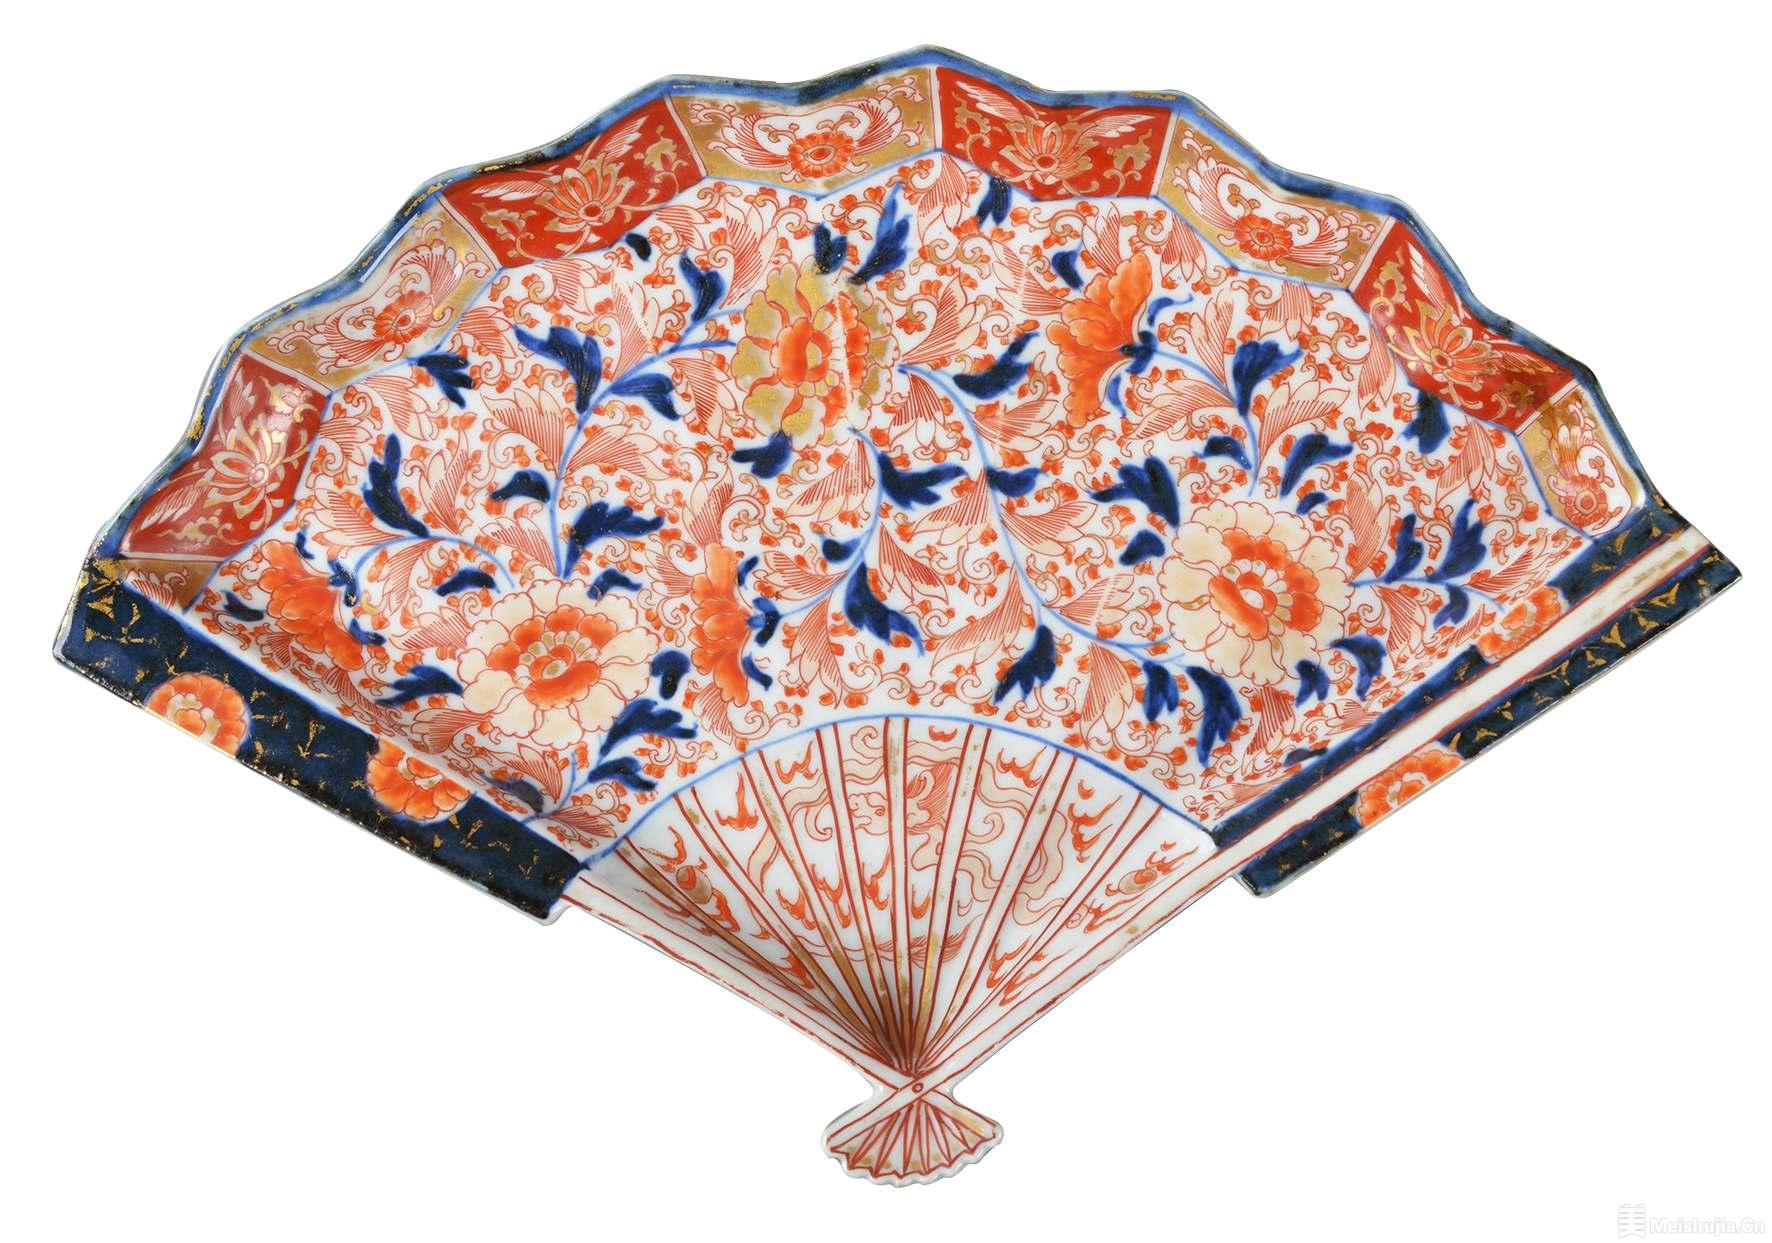 借鉴模仿反超—​—300年前经贸交流中的中日瓷器故事-艺术新闻-中国画廊网